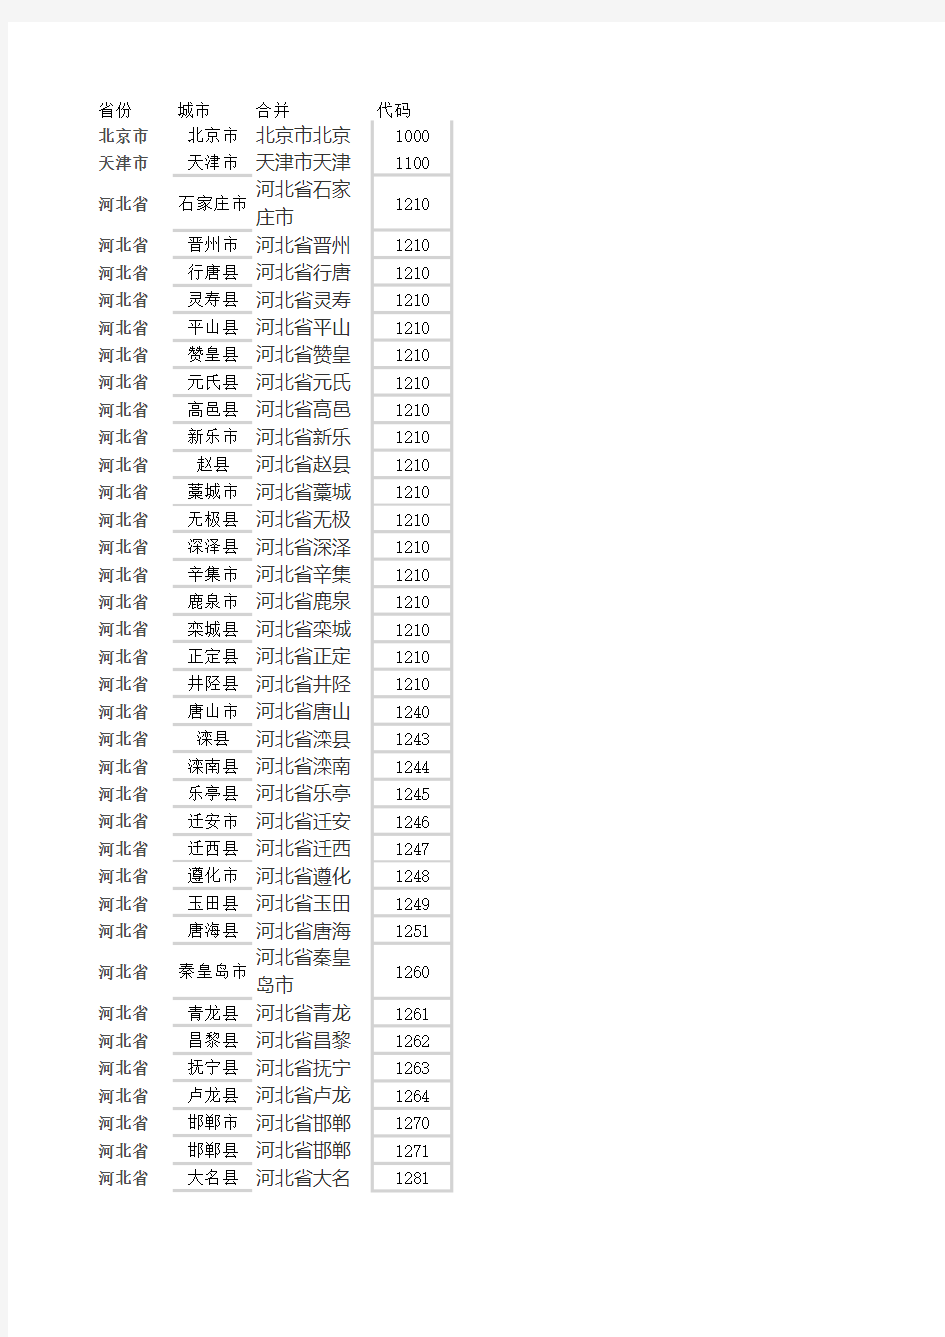 2019中国城市代码对照表